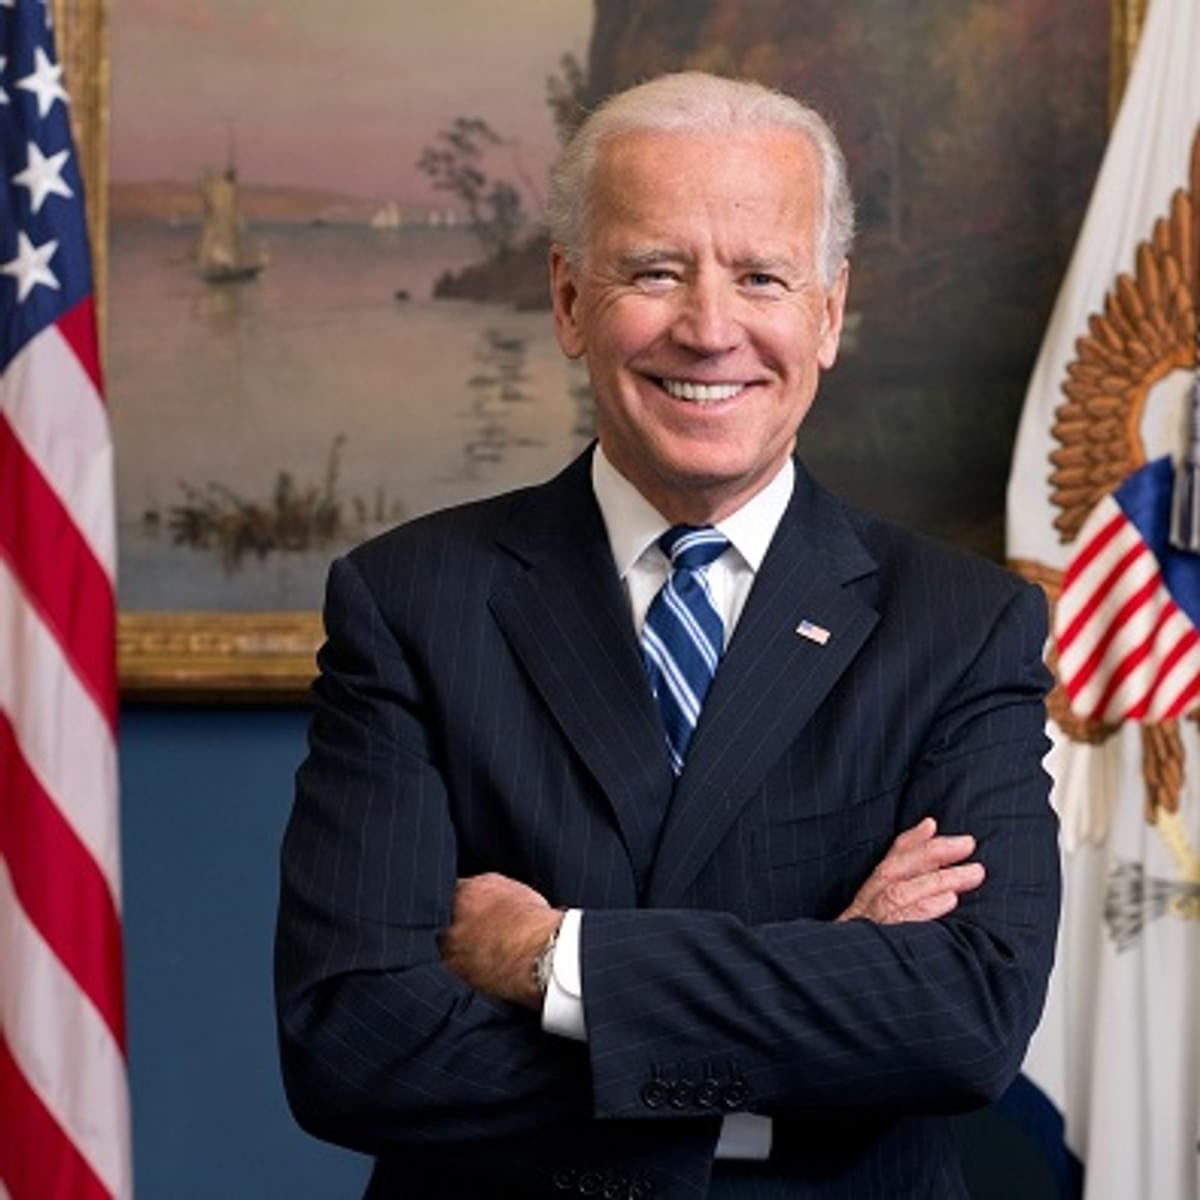 Groepen roepen president Biden op tot snelle benoeming van bestuurslid FCC image